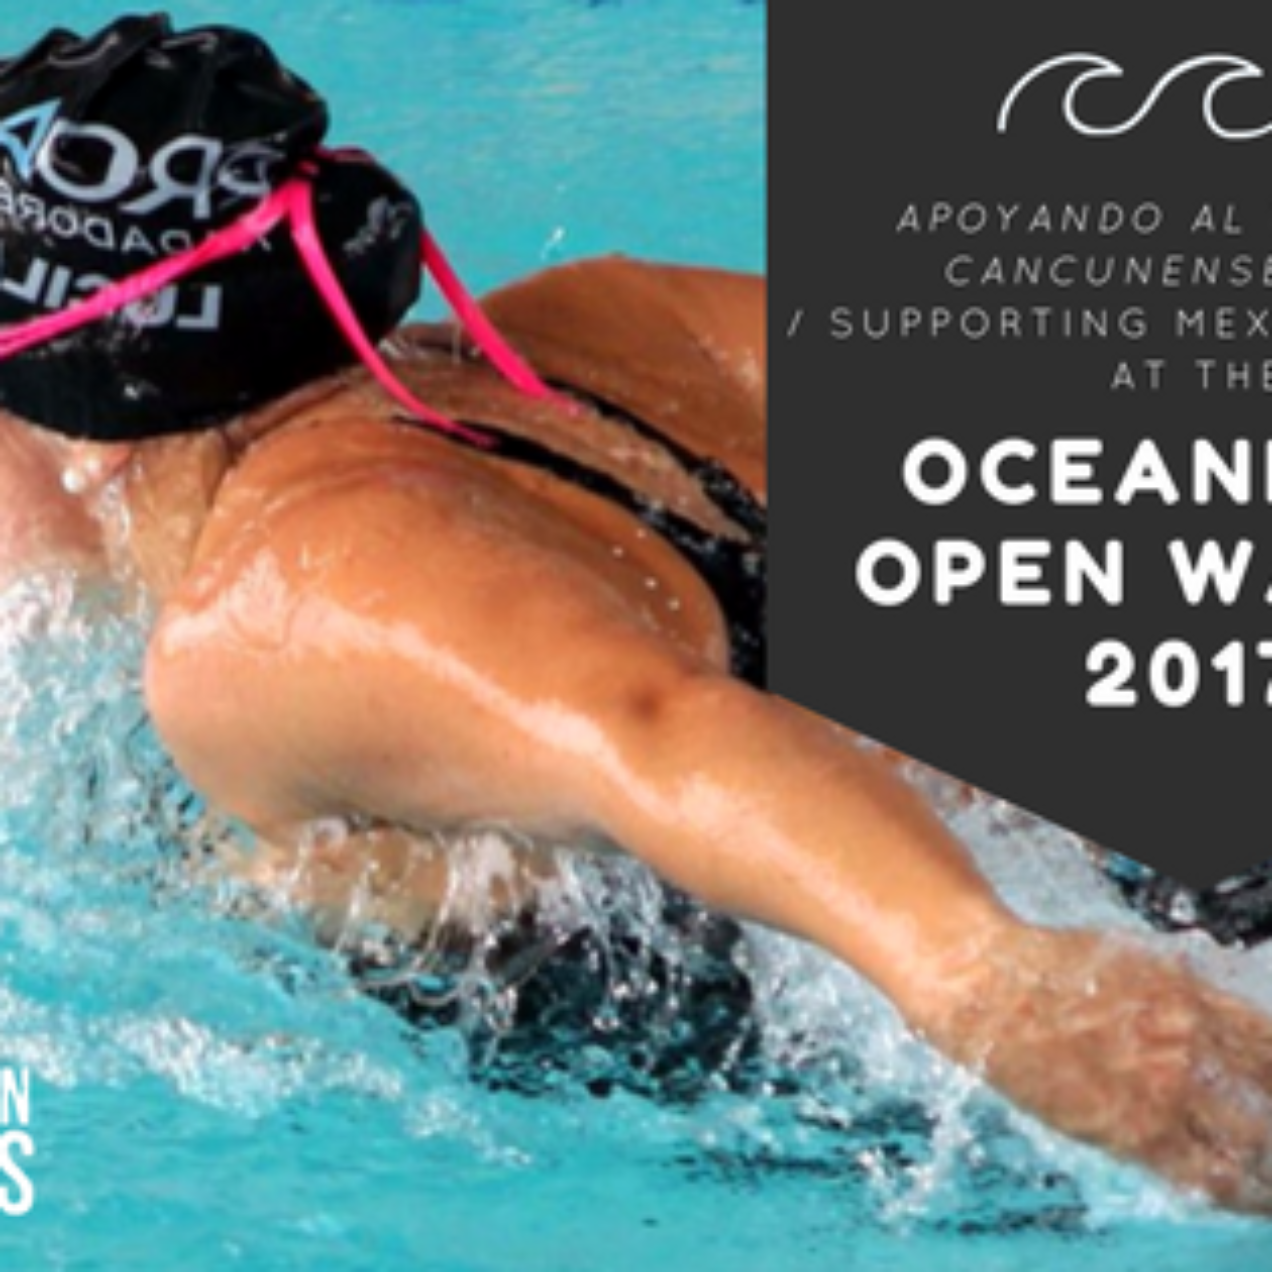 Apoyando el talento cancunense en el Oceanman Open water 2017